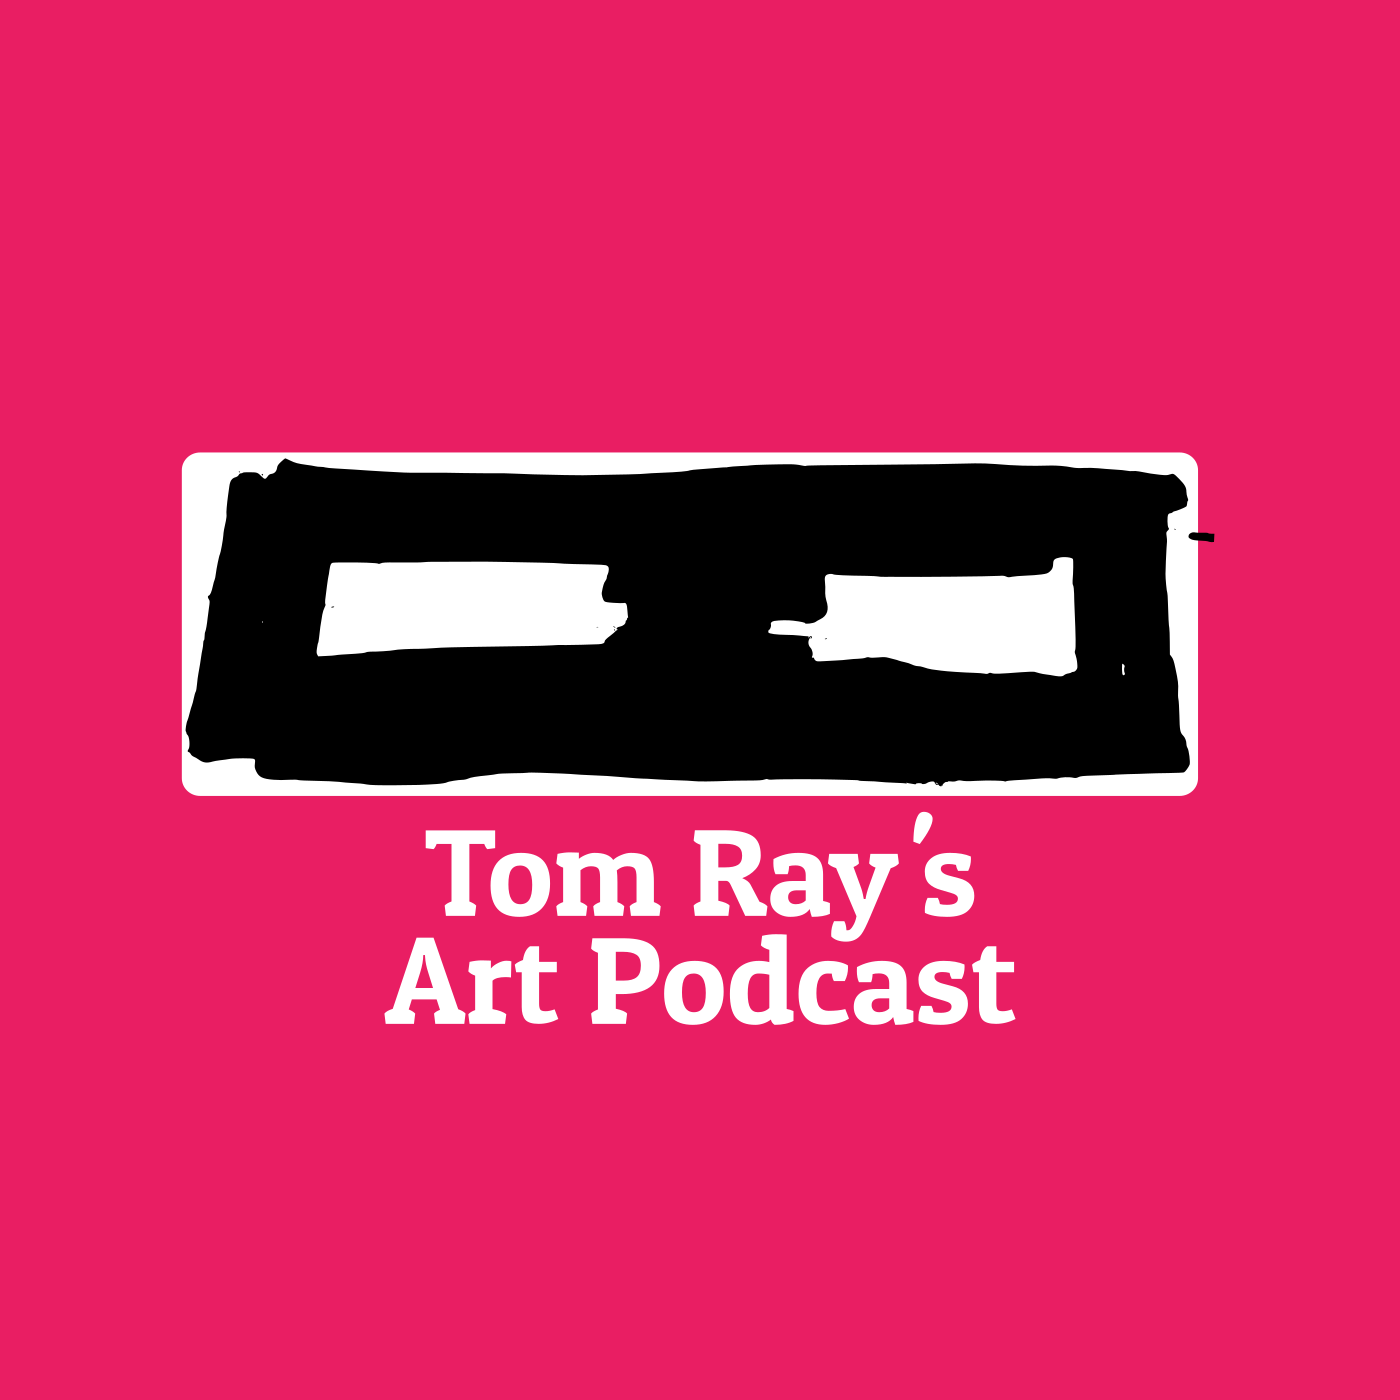 Tom Ray's Radio Station